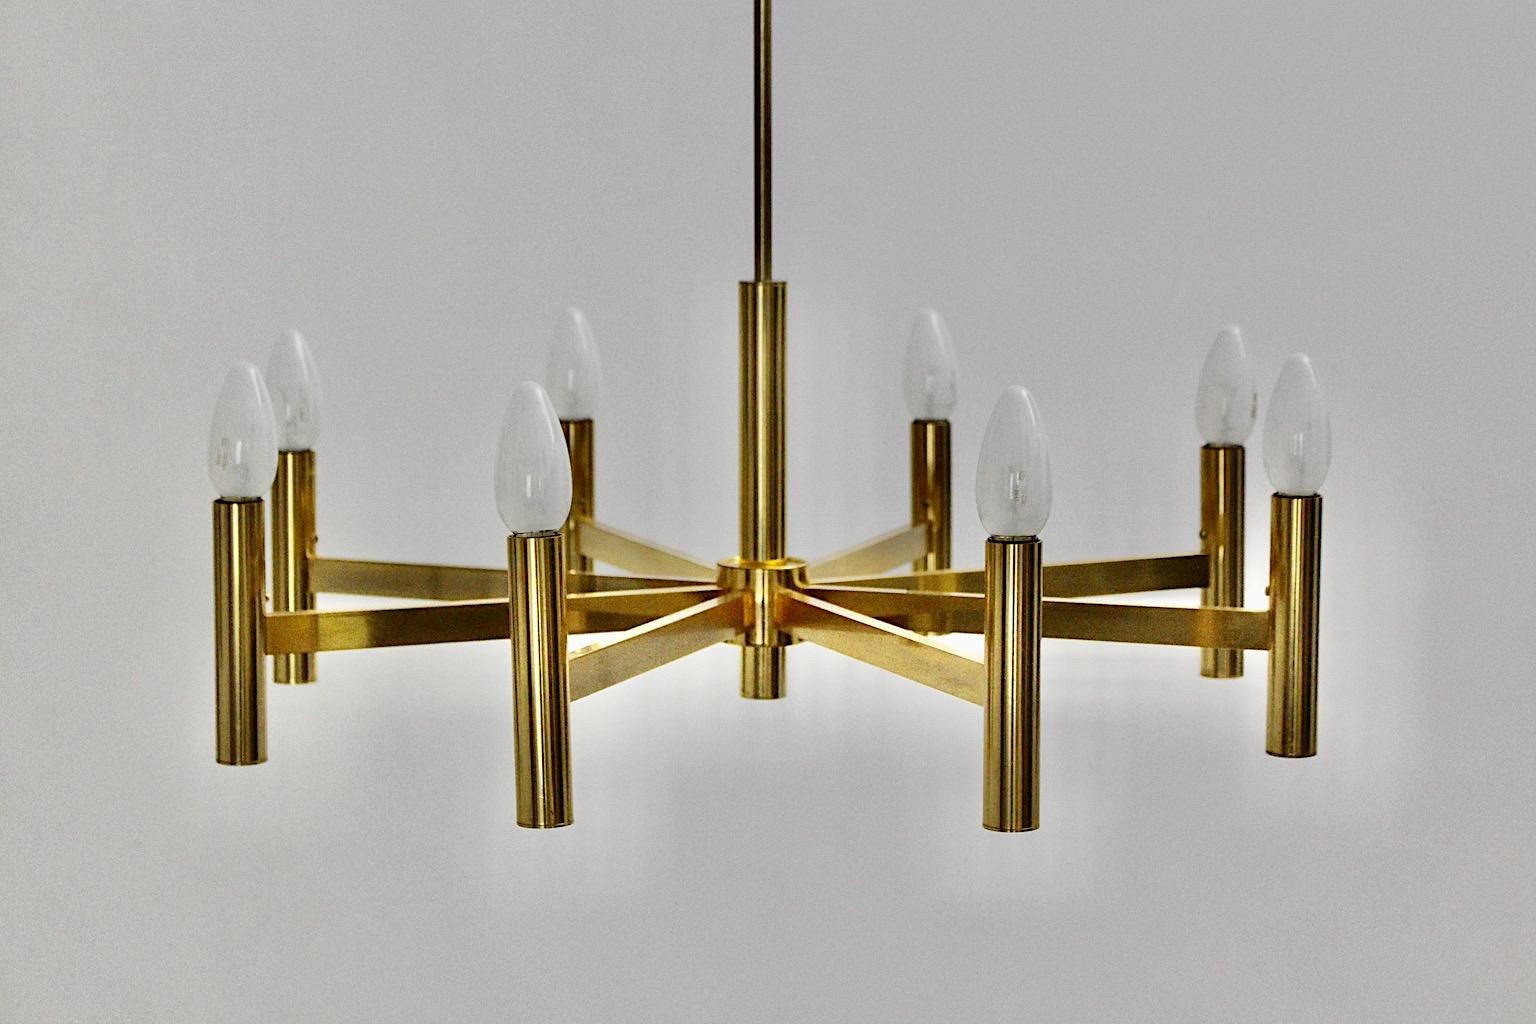 Lustre Gaetano Sciolari en métal doré vintage de style Mid-Century Modern des années 1960, Italie.
Gaetano Sciolari est issu d'une famille qui concevait et fabriquait des luminaires.
Il était réputé pour ses luminaires au design futuriste et